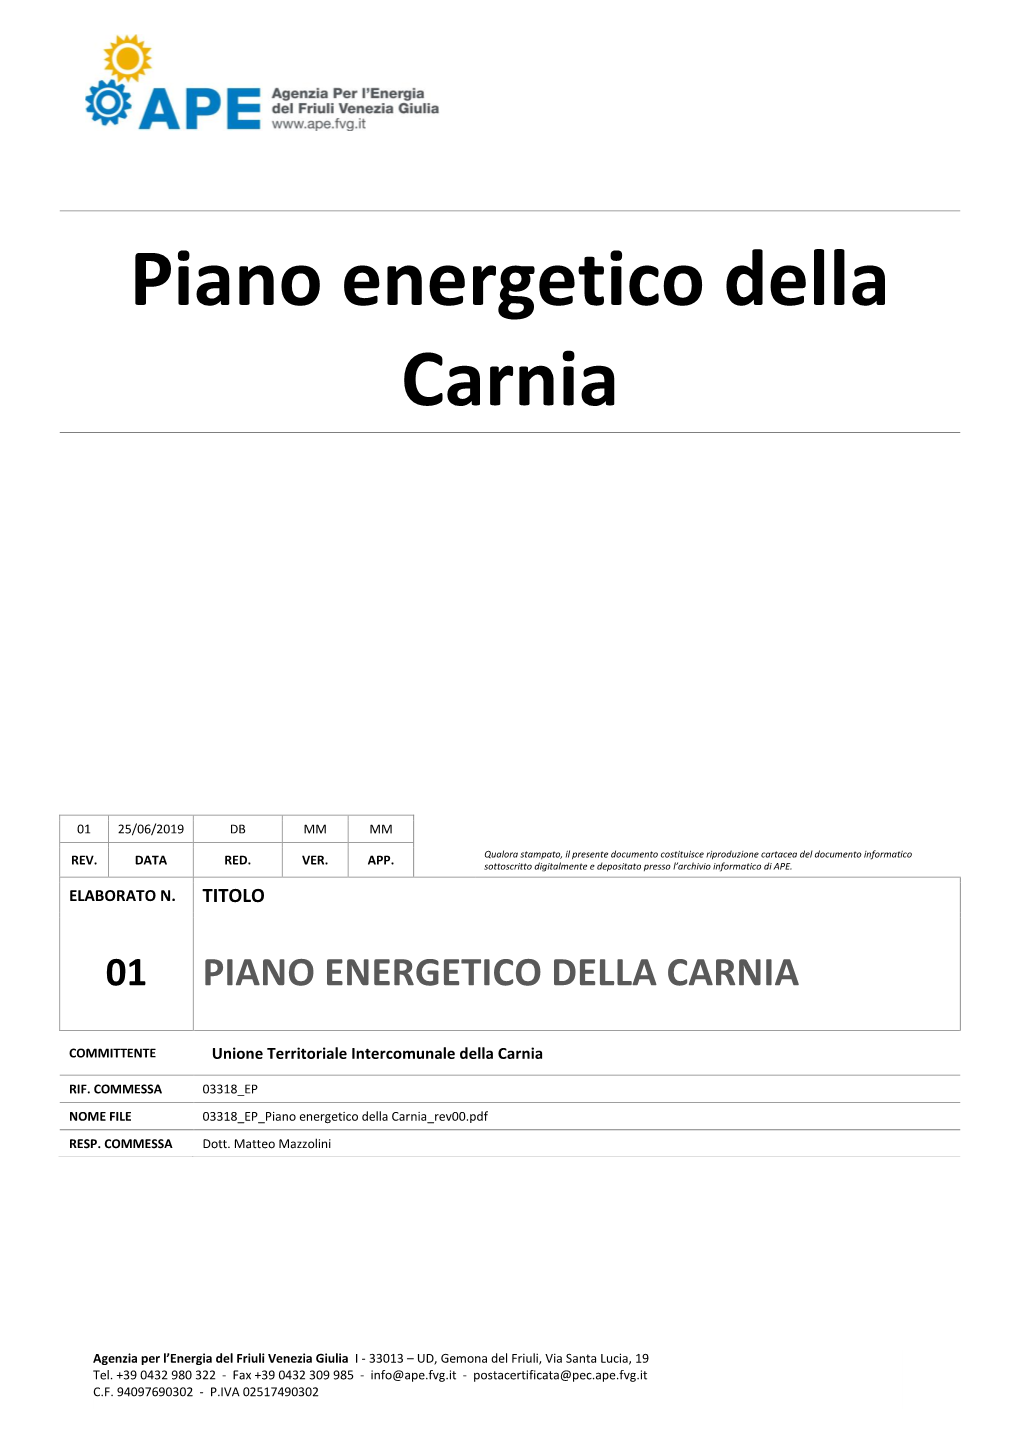 Bilancio Energetico Della Carnia